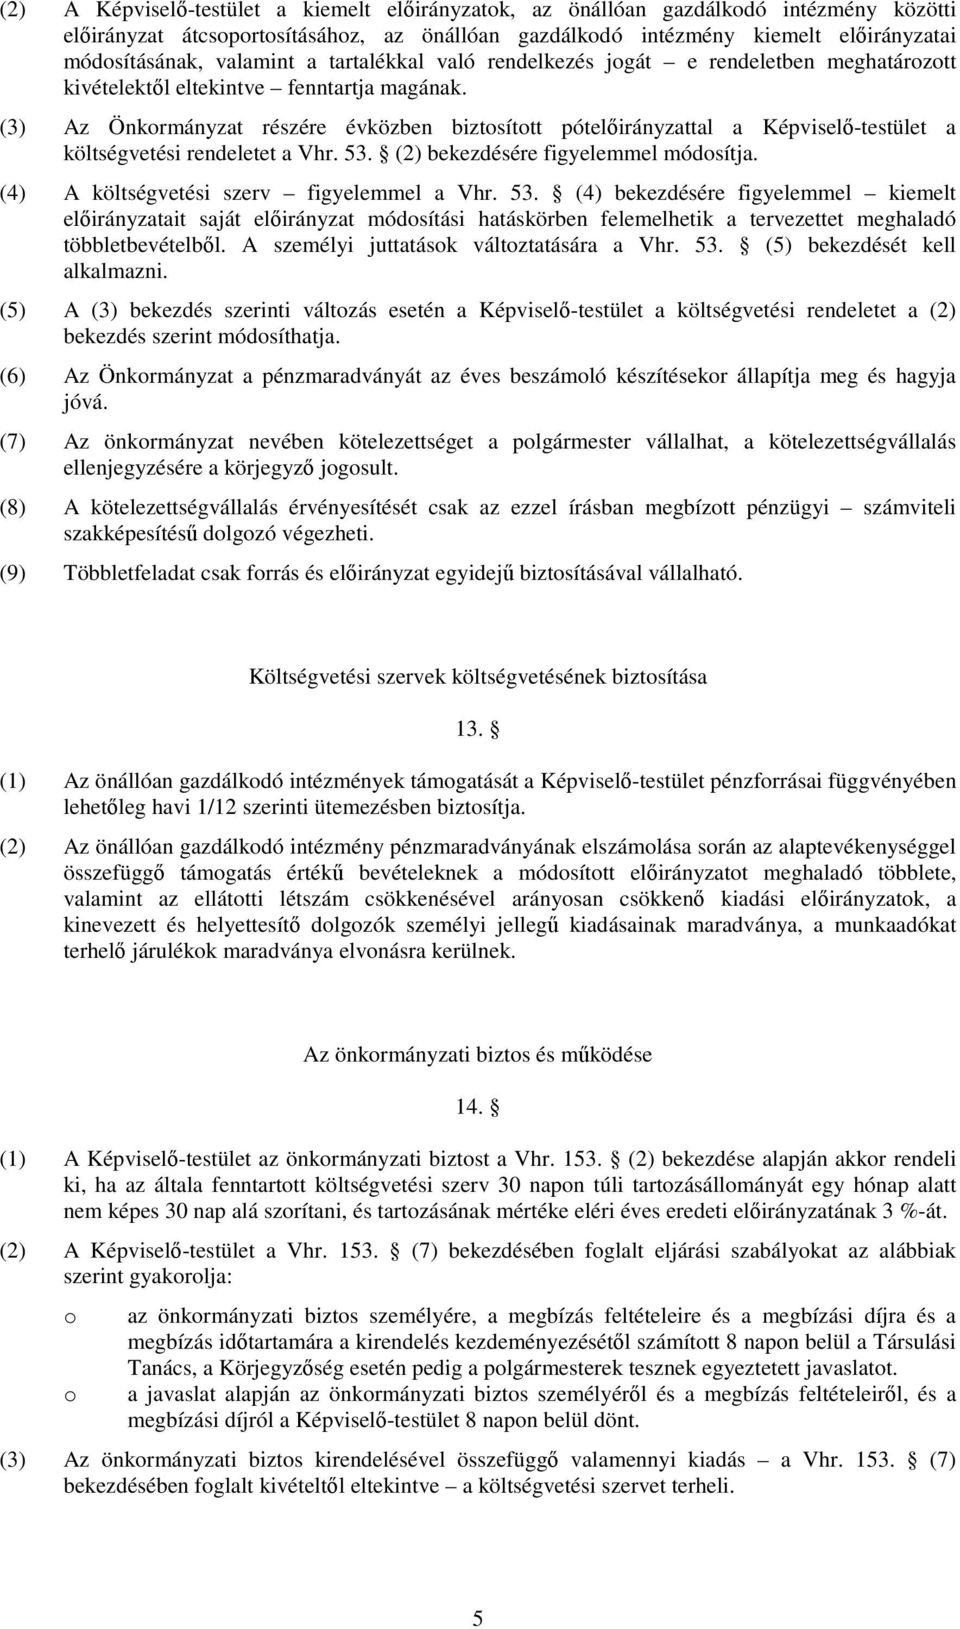 (3) Az Önkormányzat részére évközben biztosított pótelıirányzattal a Képviselı-testület a költségvetési rendeletet a Vhr. 53. (2) bekezdésére figyelemmel módosítja.